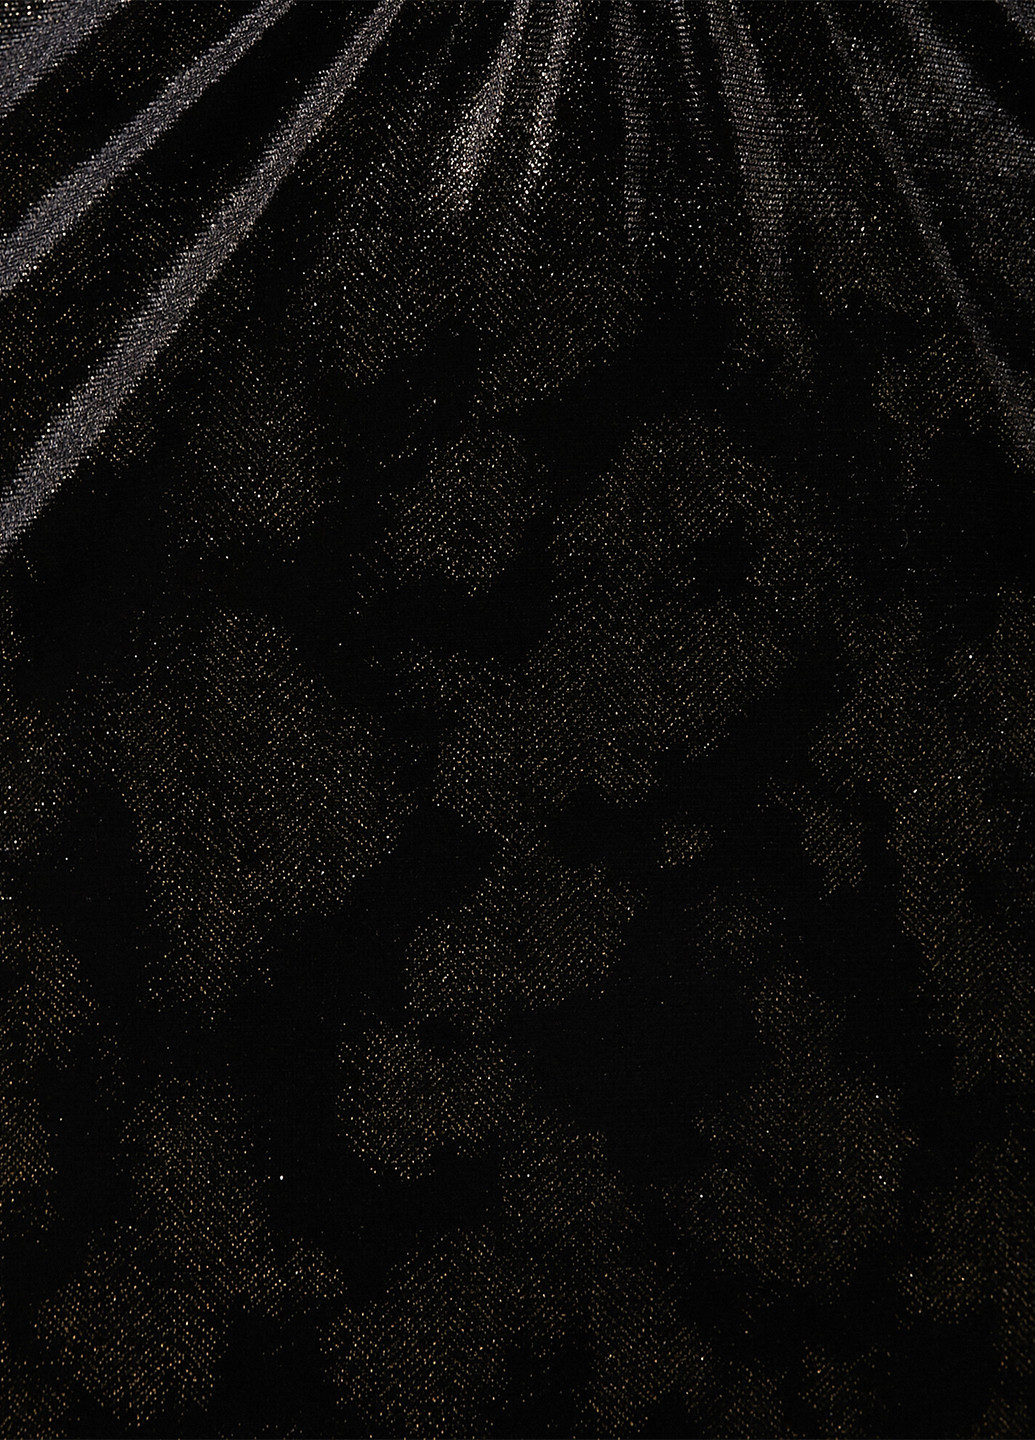 Черное коктейльное платье футляр KOTON